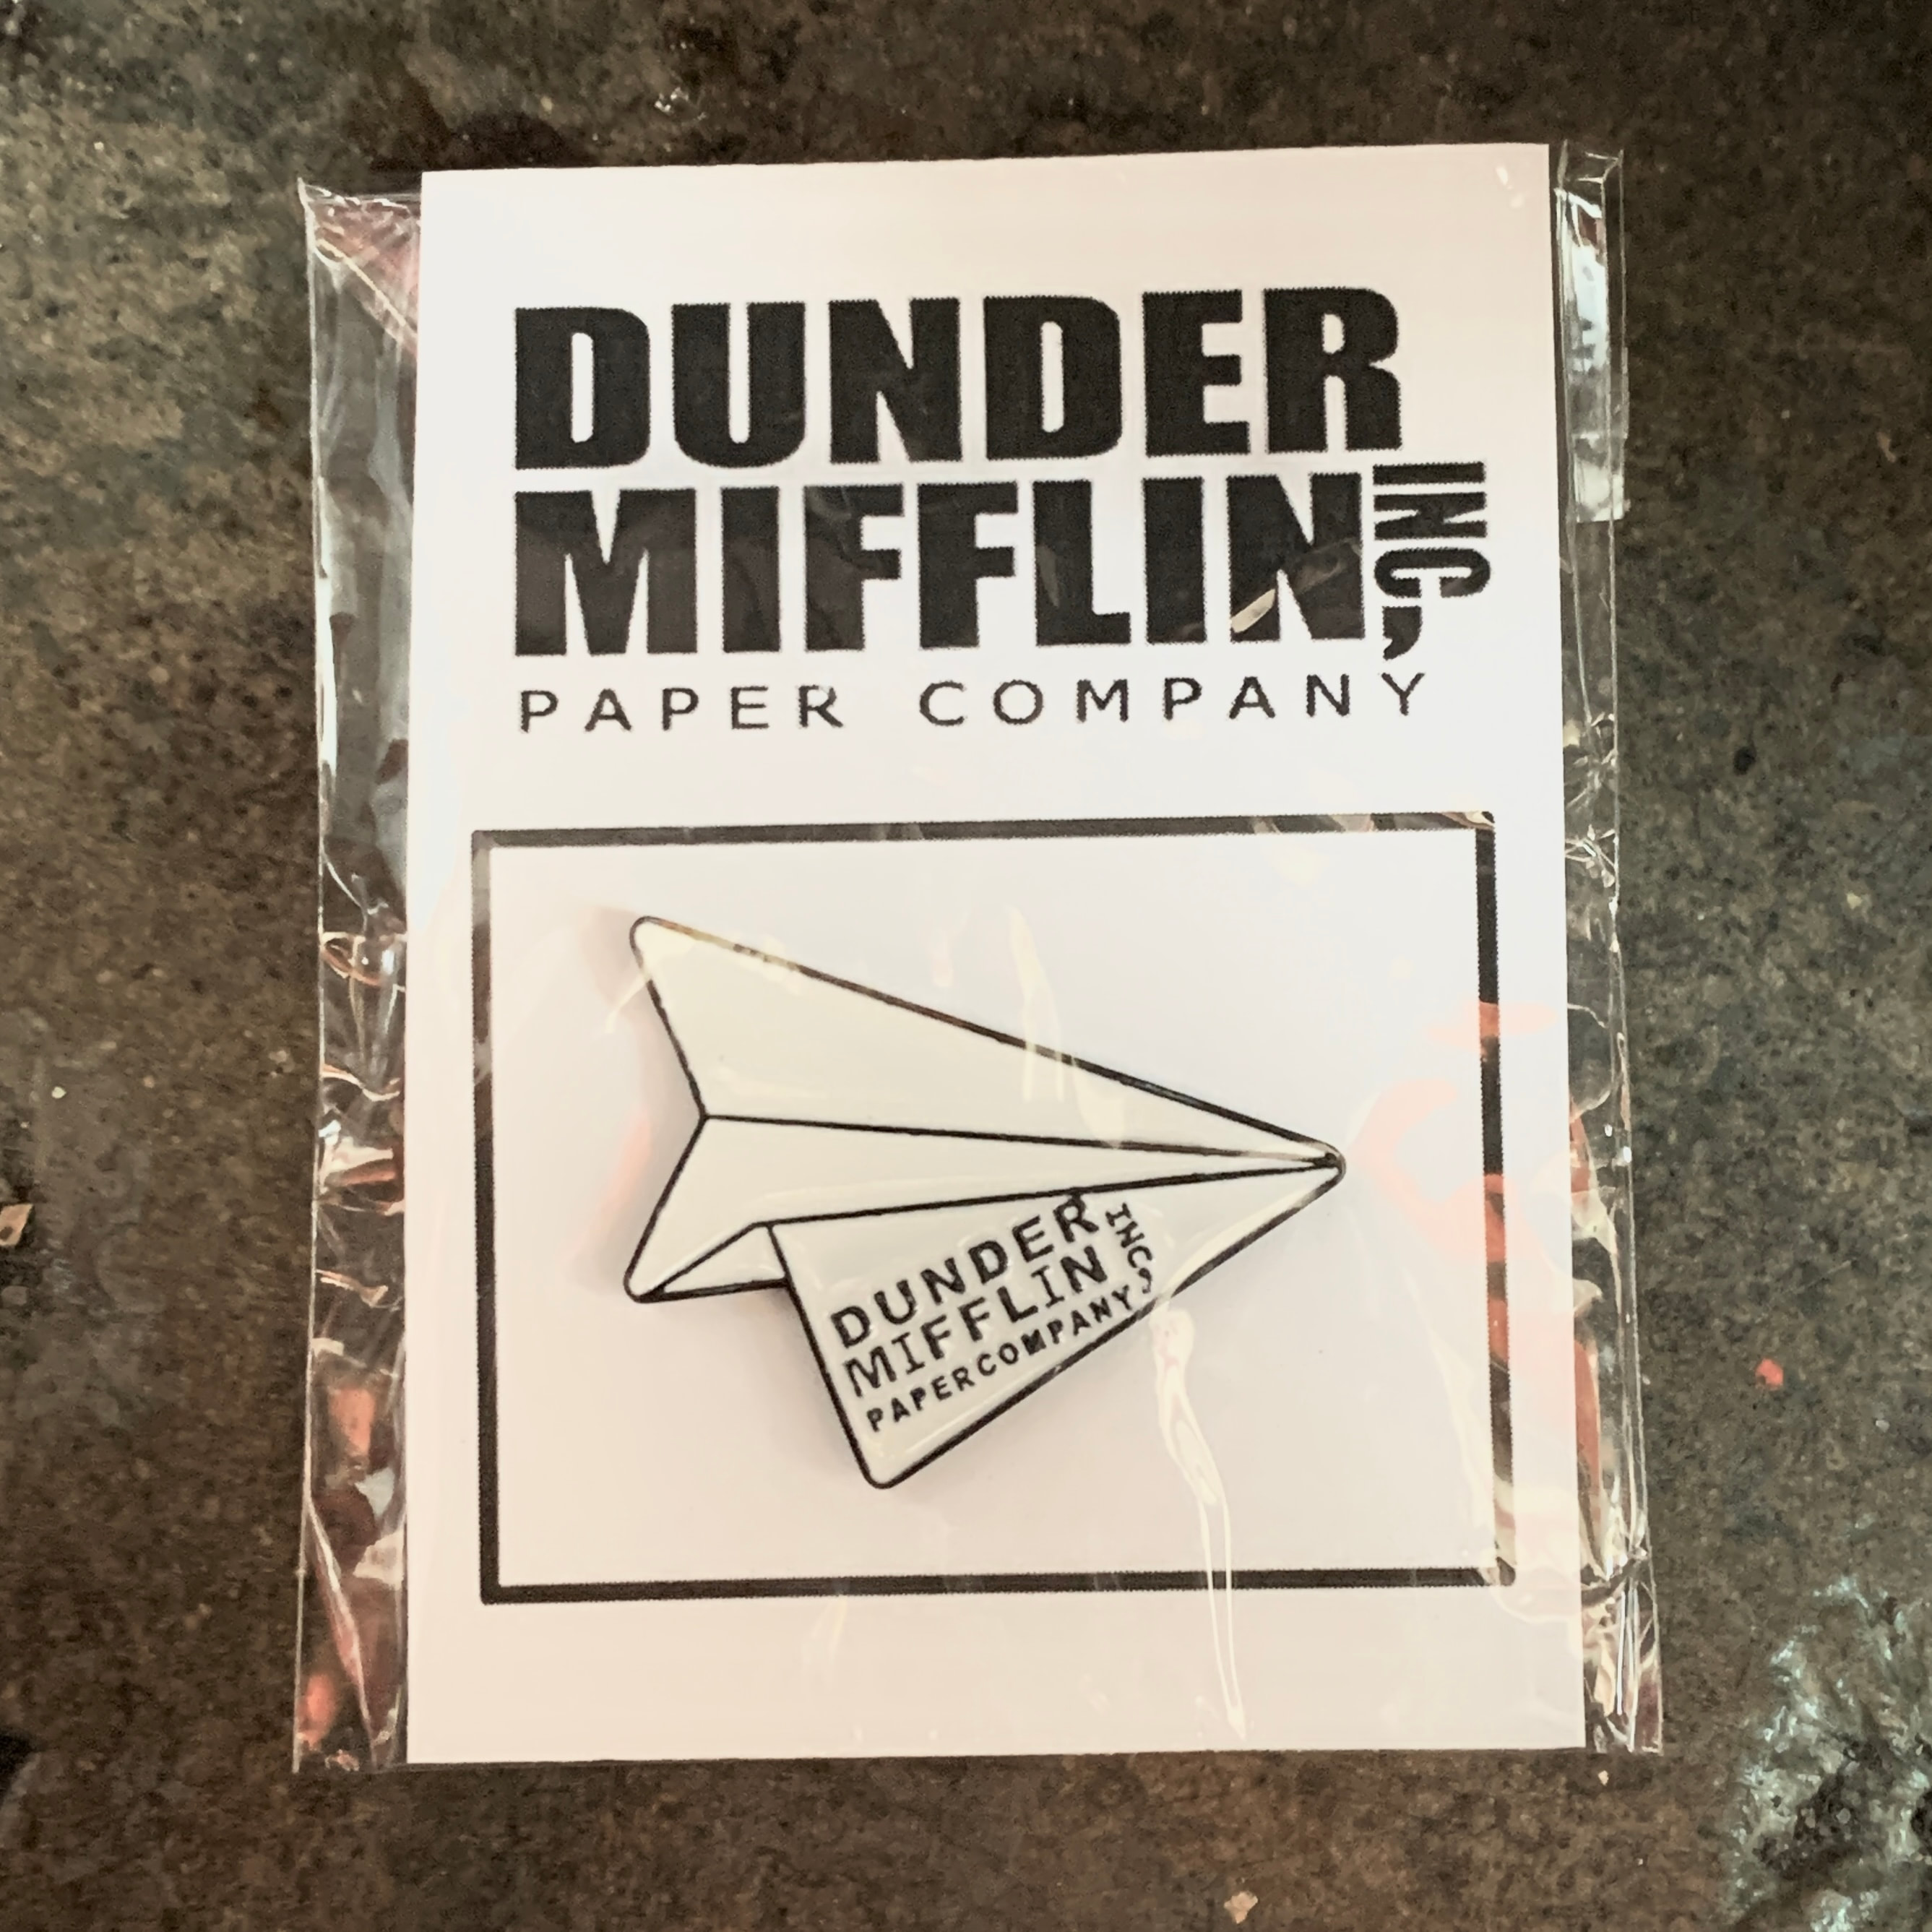 The Office Dunder Mifflin Logo Enamel Pin